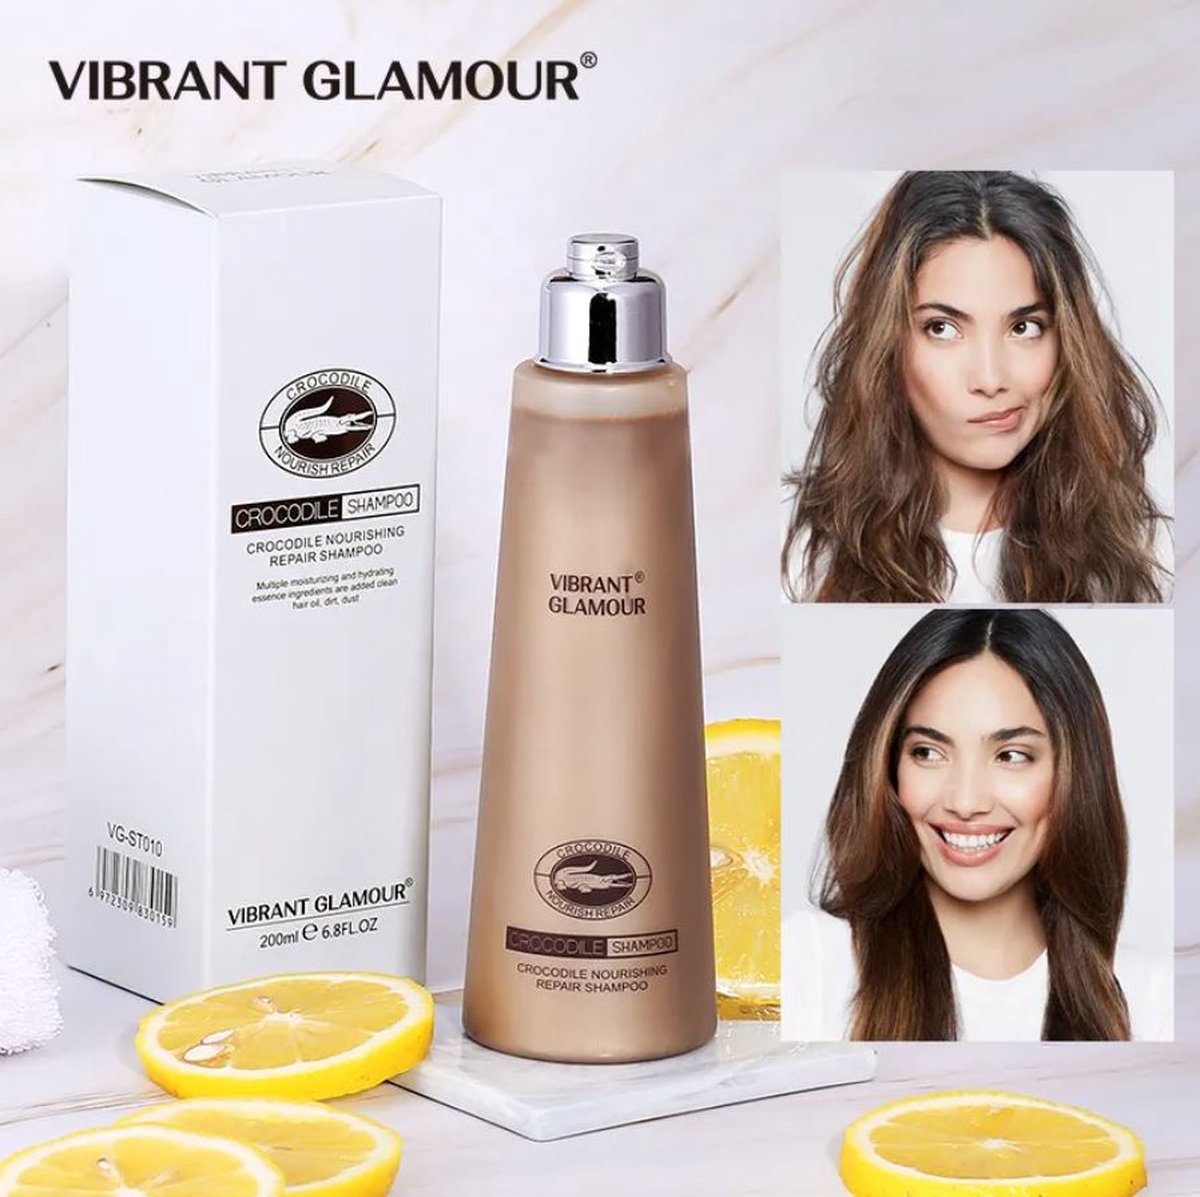 VIBRANT GLAMOUR - Crocodile shampoo - Essentiële Olie - Hoge Kwaliteit - Vitaminen E - Gevoelige Hoofdhuid - Verjongende revitaliserende shampoo - 200ml